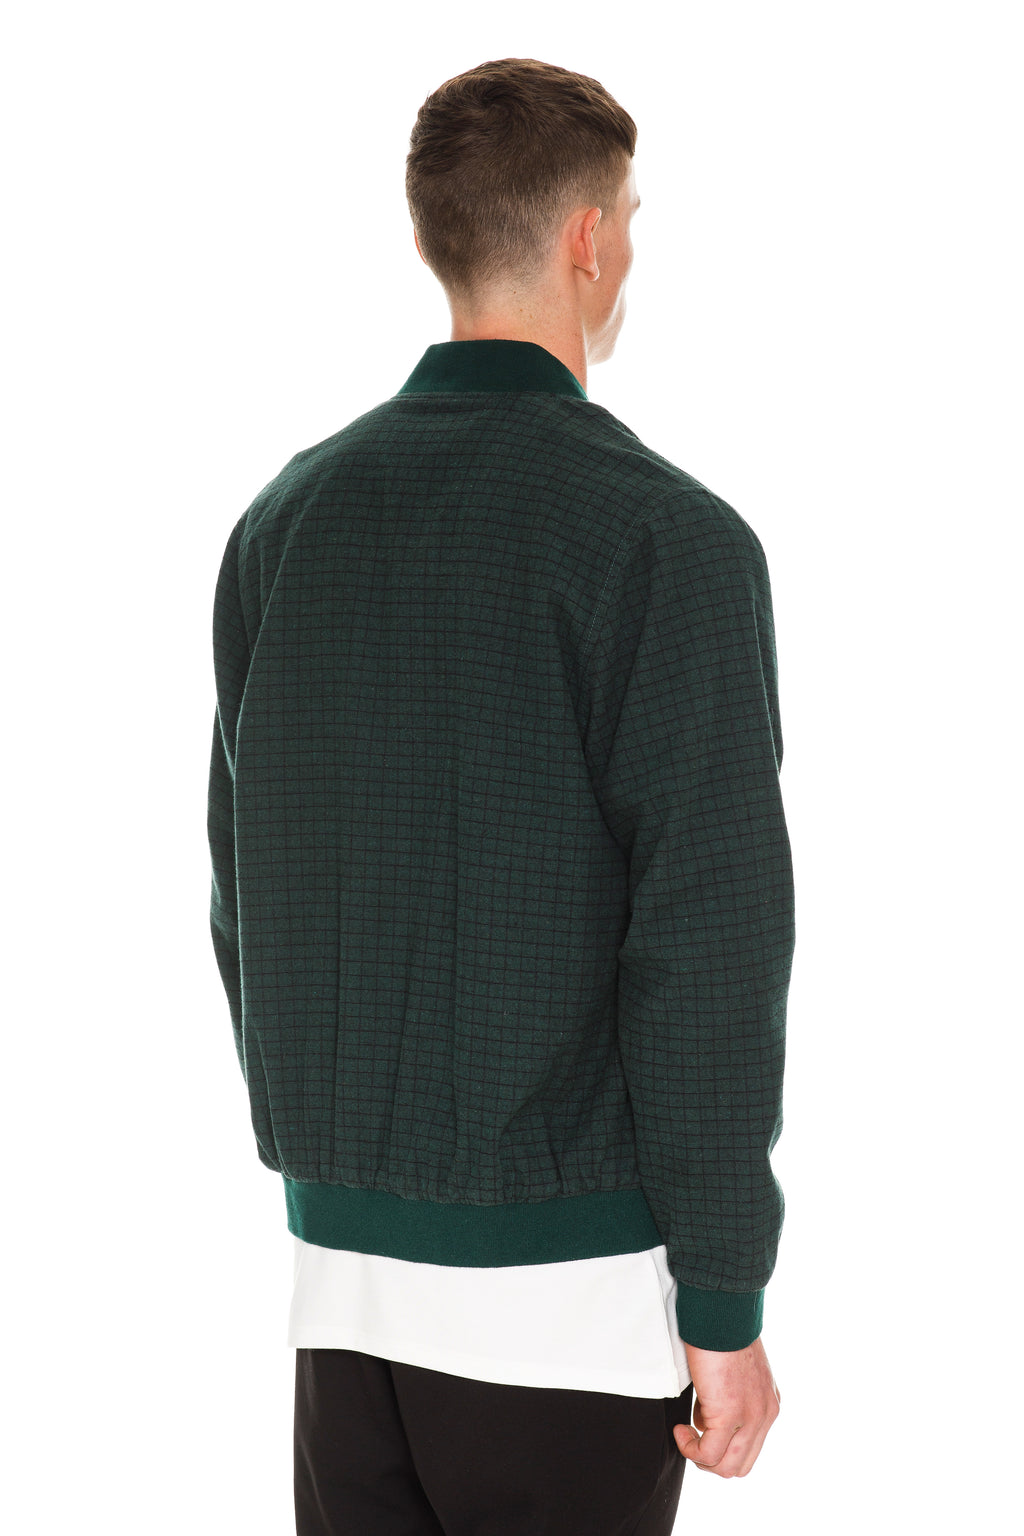 Velvet Green Checkered Bomber With Wool-Blend Stand Collar, Cuffs & Hem